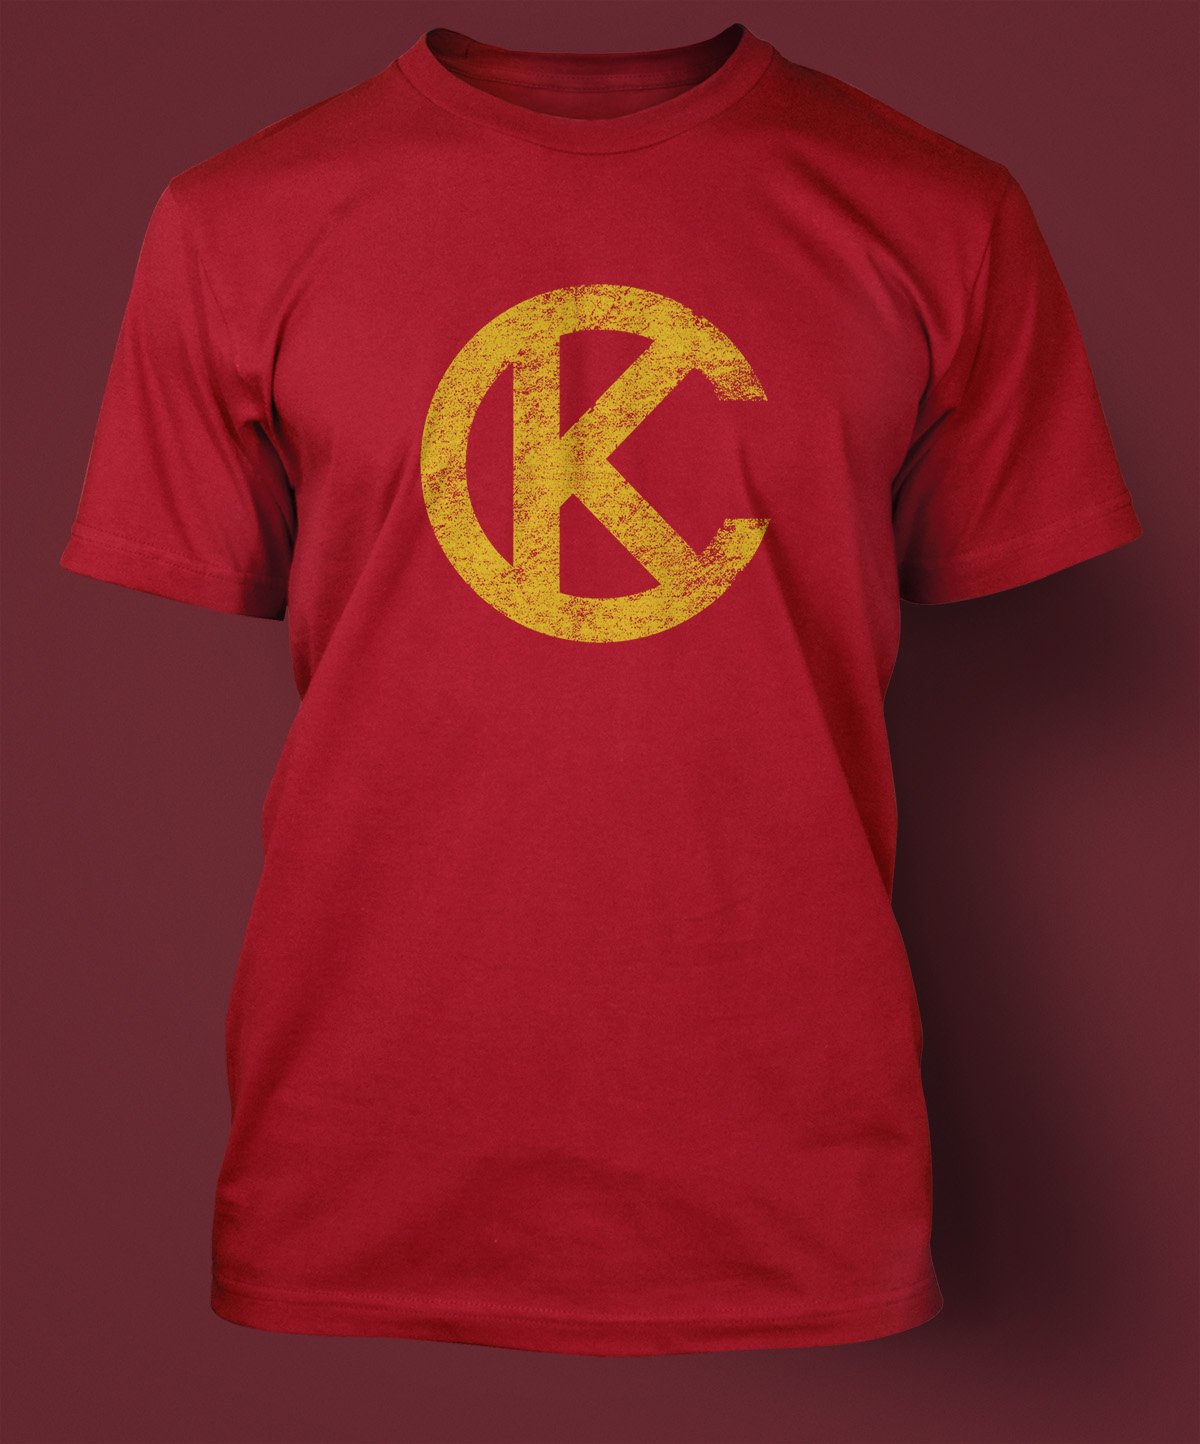 kc shirts